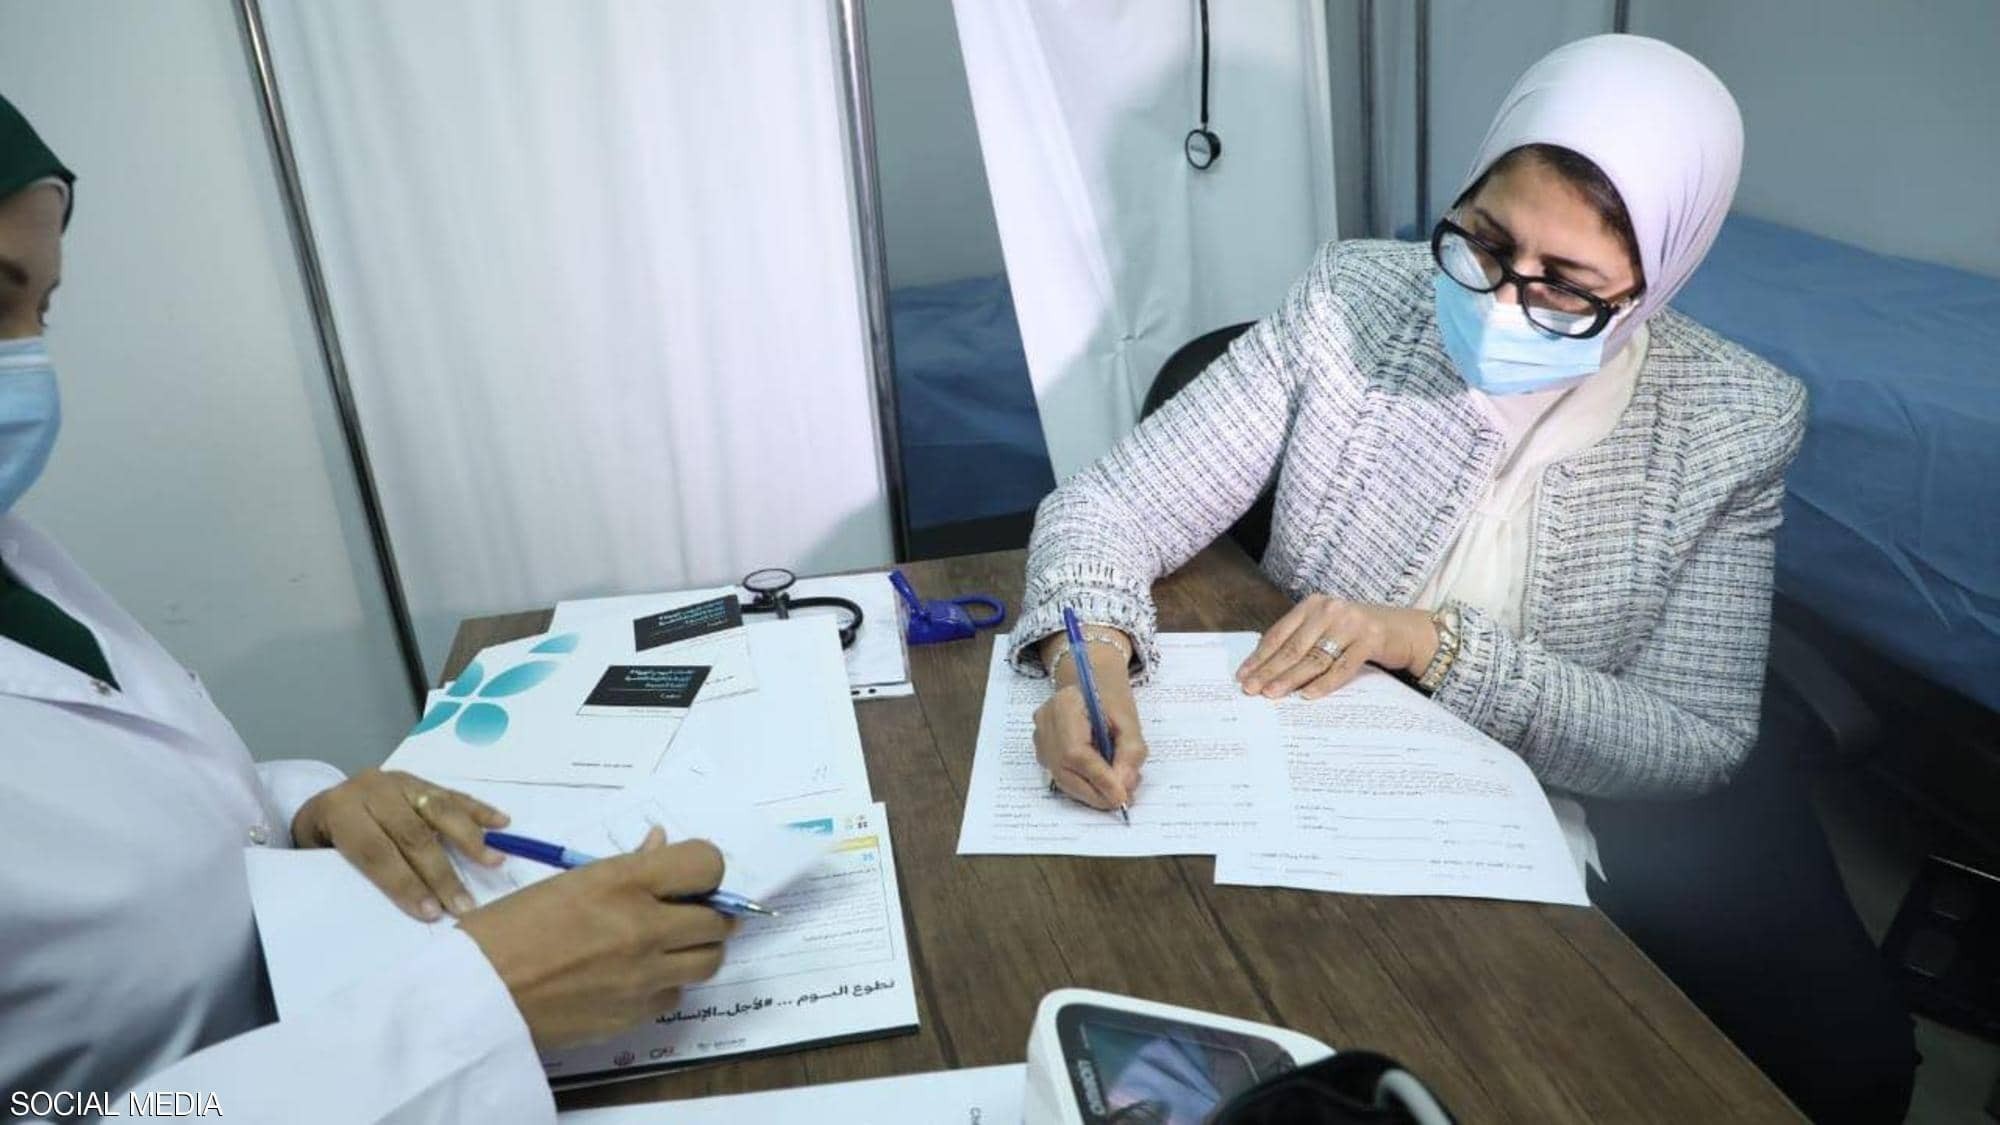 وزيرة الصحة المصرية تشارك في التجربة الإكلينيكية للقاح كورونا